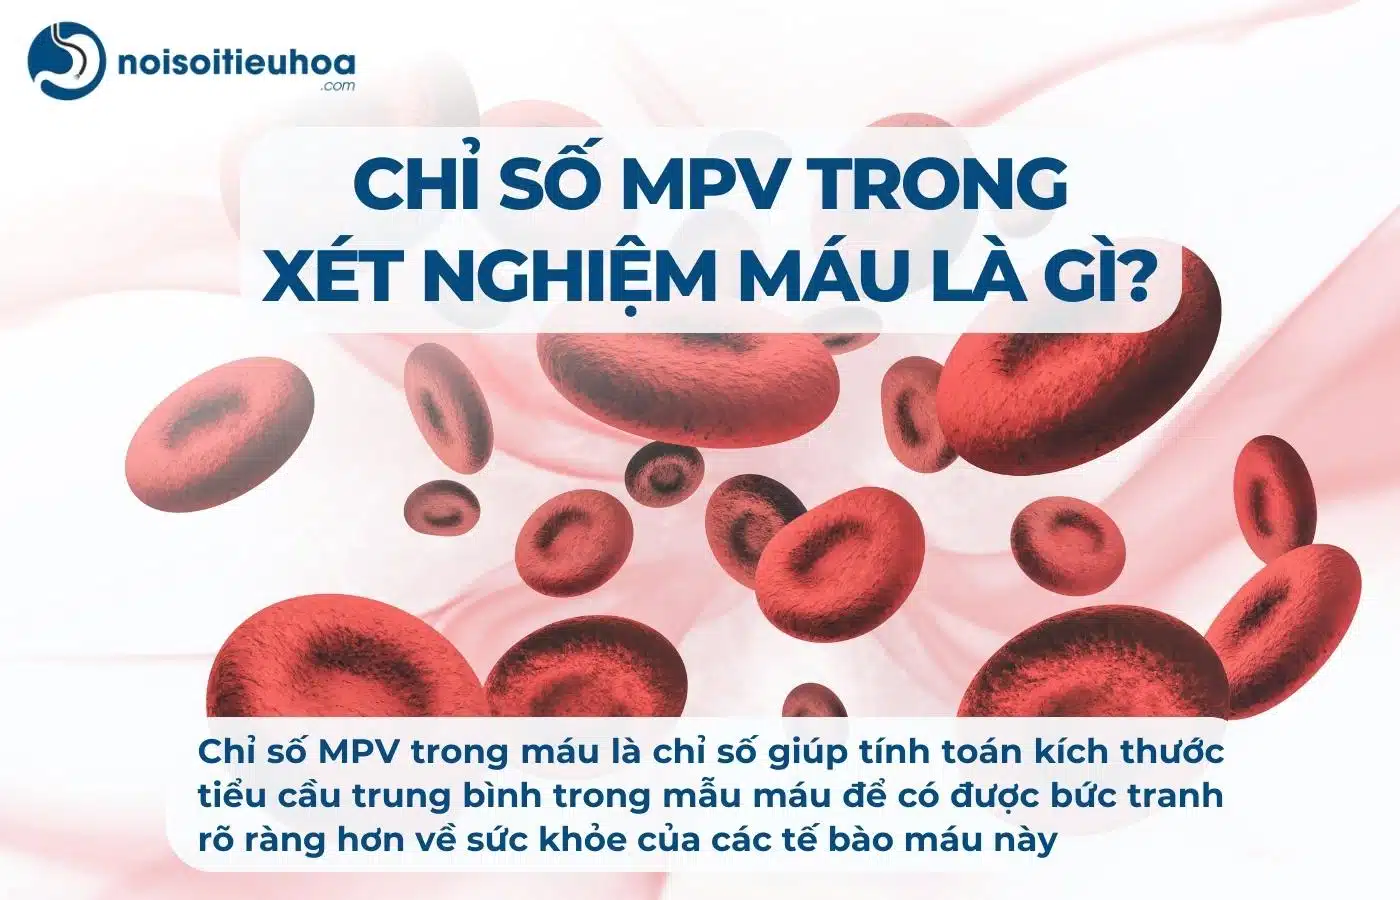 Chỉ số MPV trong xét nghiệm công thức máu là gì?